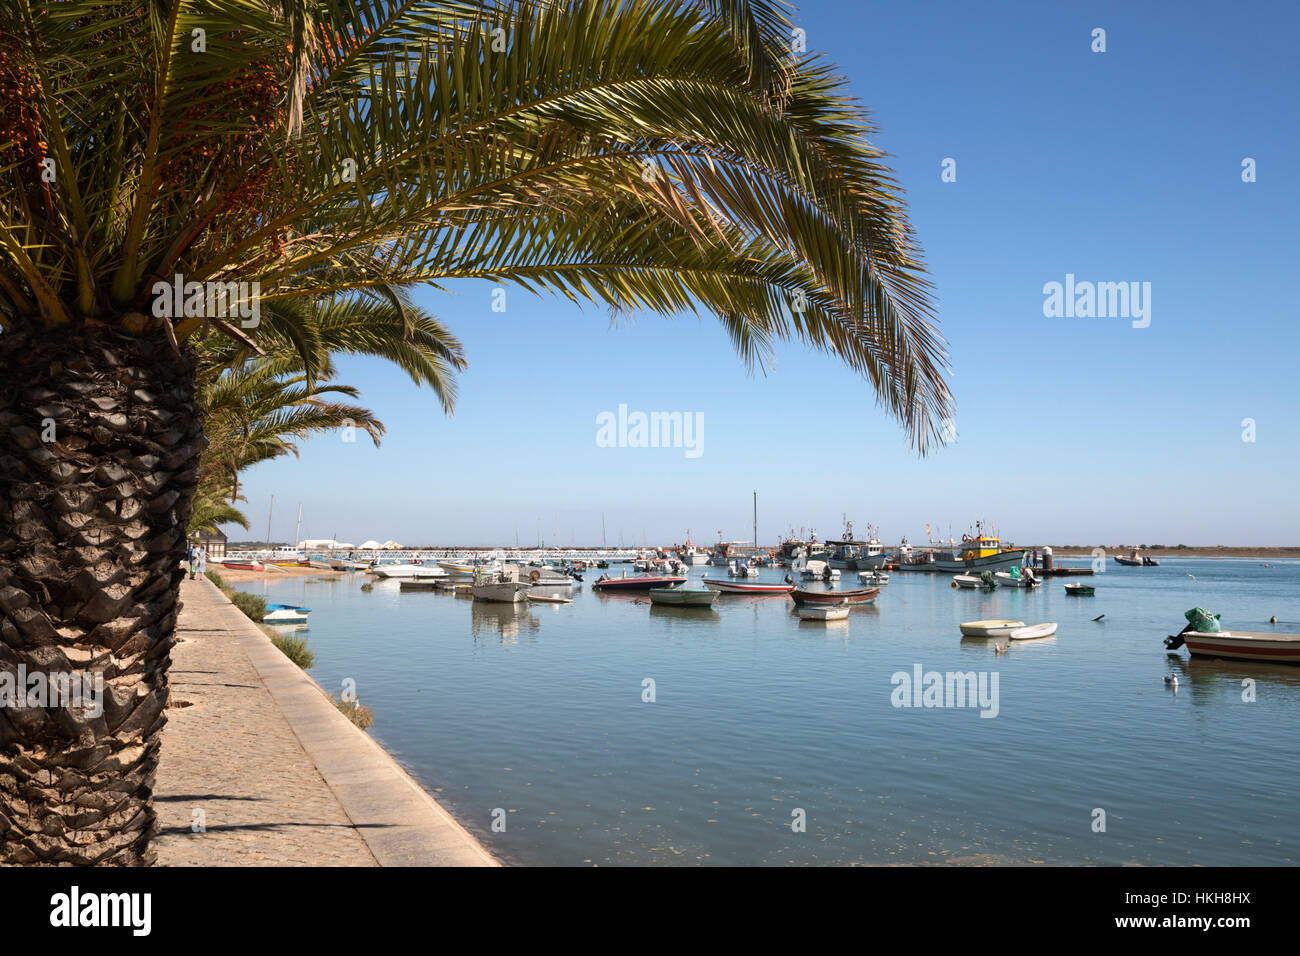 Palmo rivestito promenade di villaggio di pescatori conosciuto come capitale del polpo (capitali Polvo), Santa Luzia, Algarve, Portogallo, Europa Foto Stock